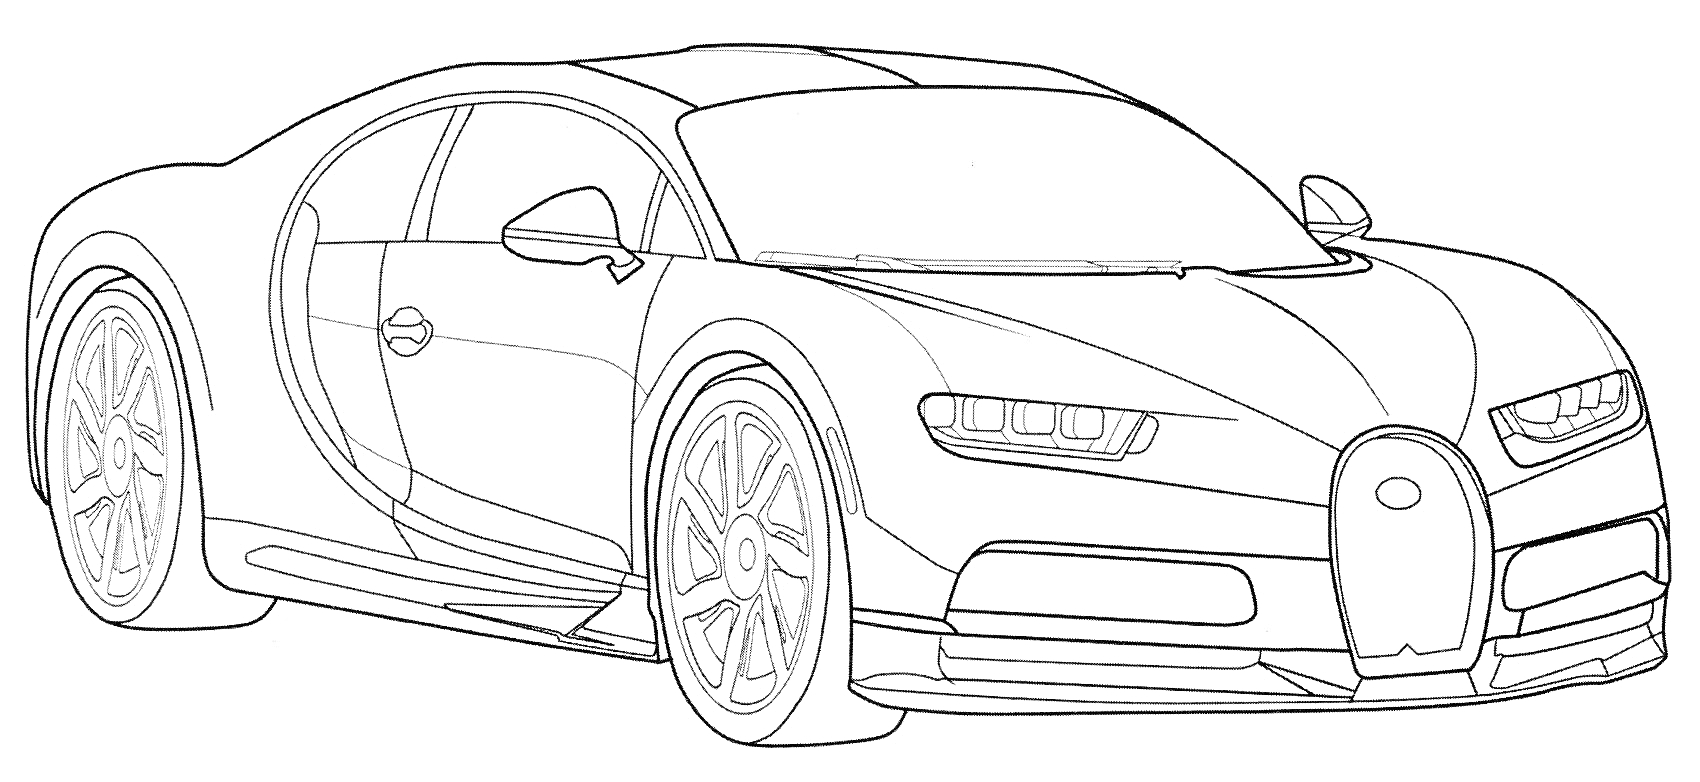 Раскраска Раскраска с изображением полицейской машины Bugatti